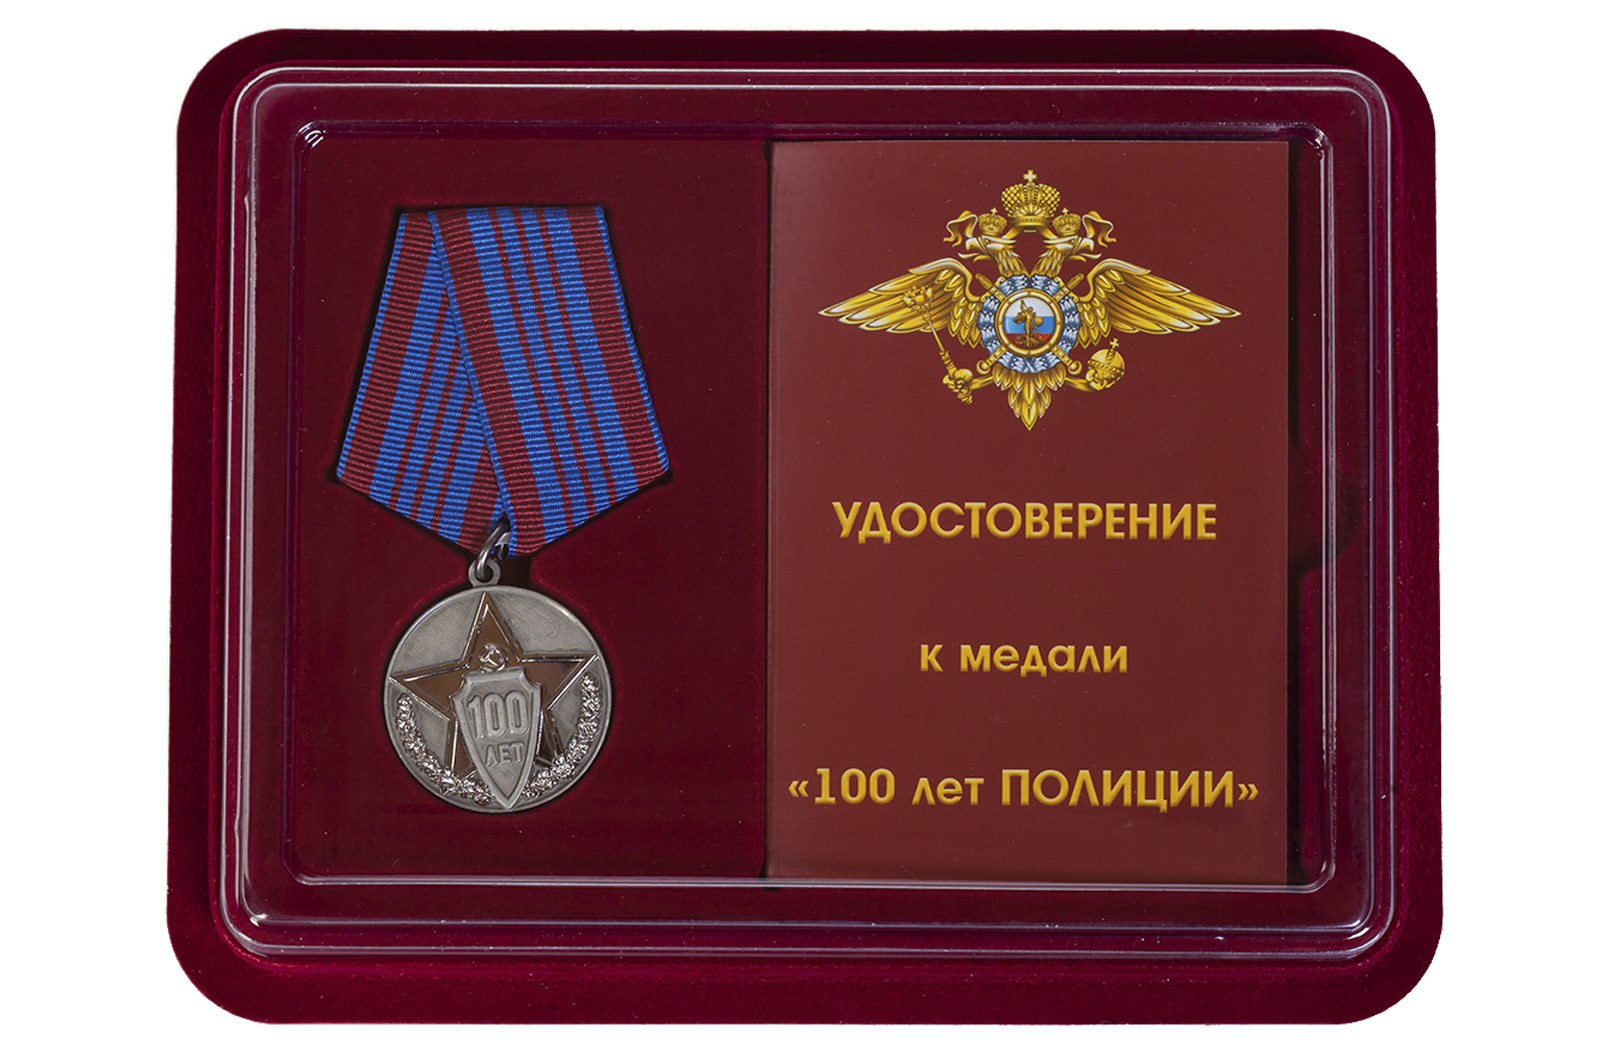 Купить юбилейную медаль 100 лет полиции России в подарок мужчине